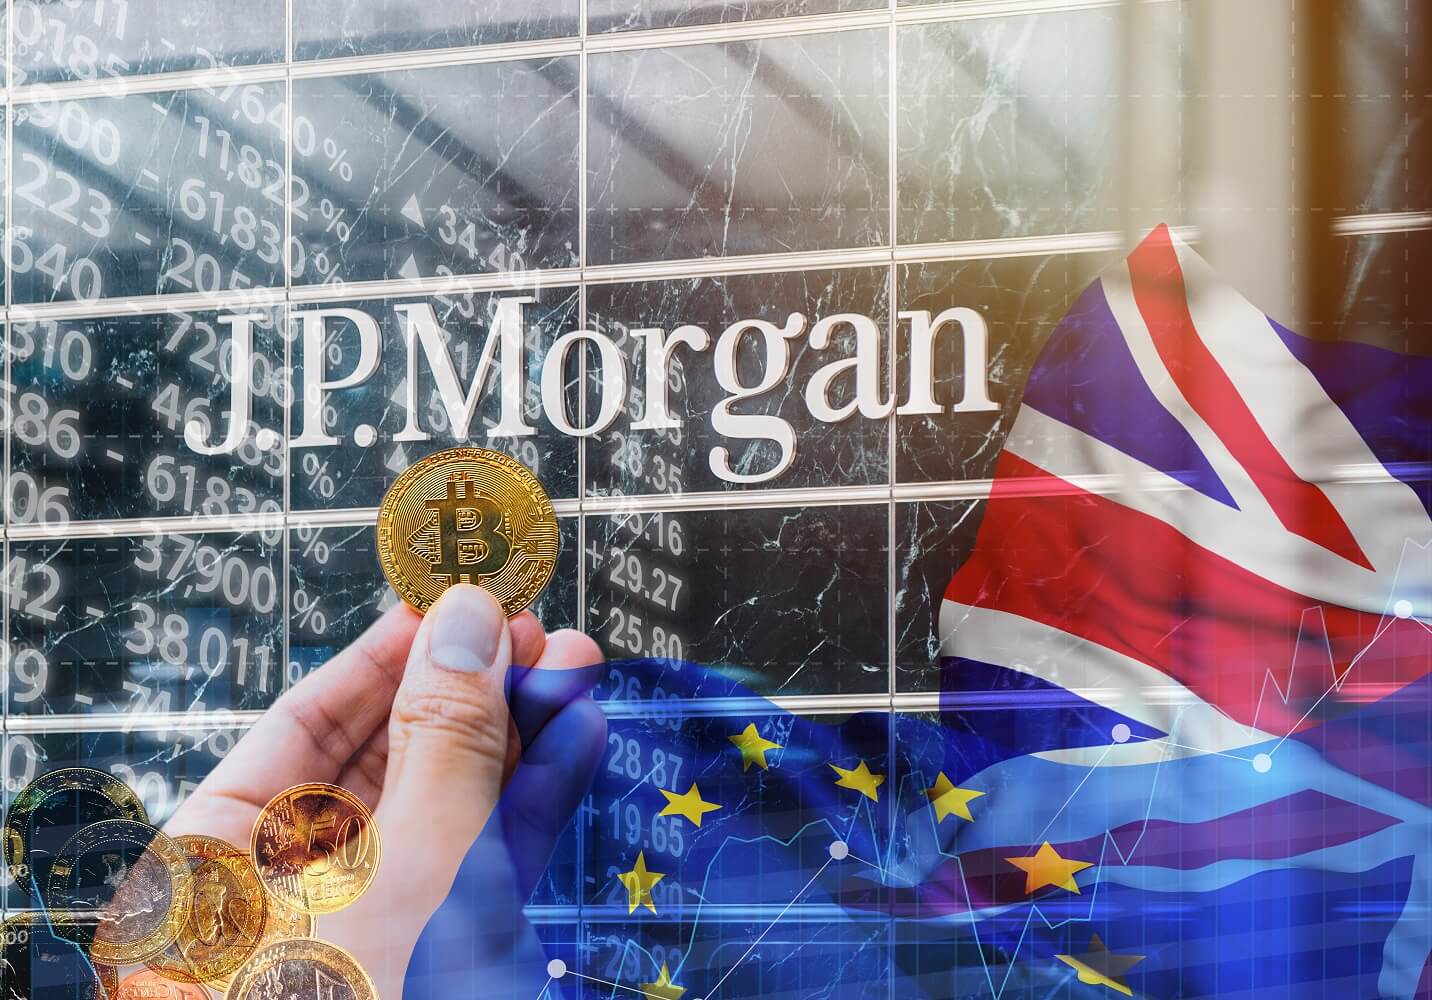 JP Morgan allows clients to buy Bitcoin